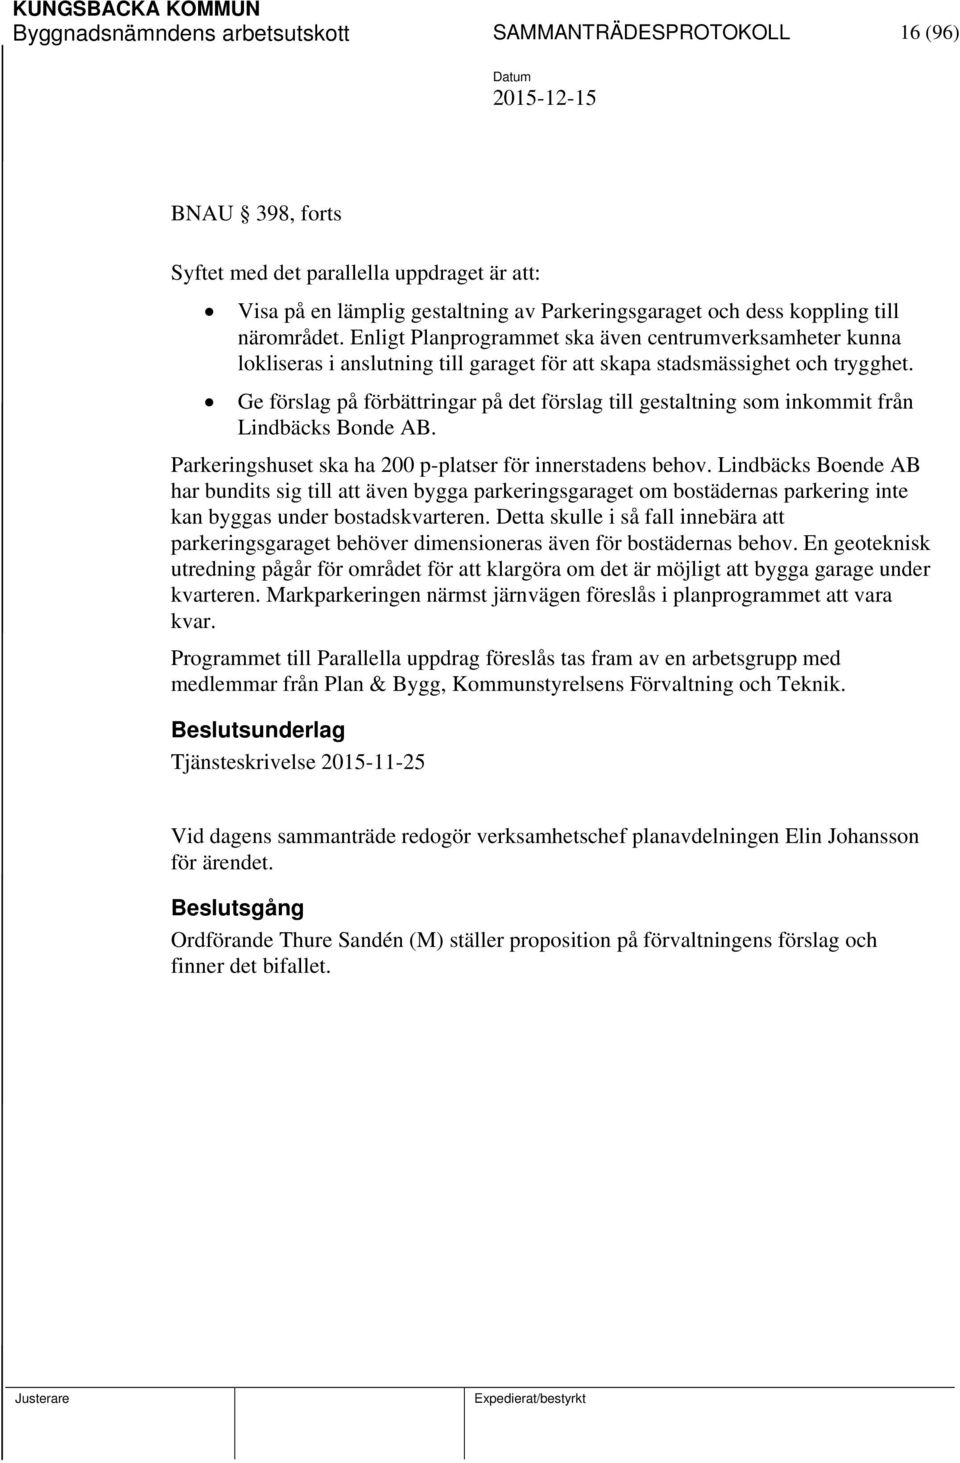 Ge förslag på förbättringar på det förslag till gestaltning som inkommit från Lindbäcks Bonde AB. Parkeringshuset ska ha 200 p-platser för innerstadens behov.